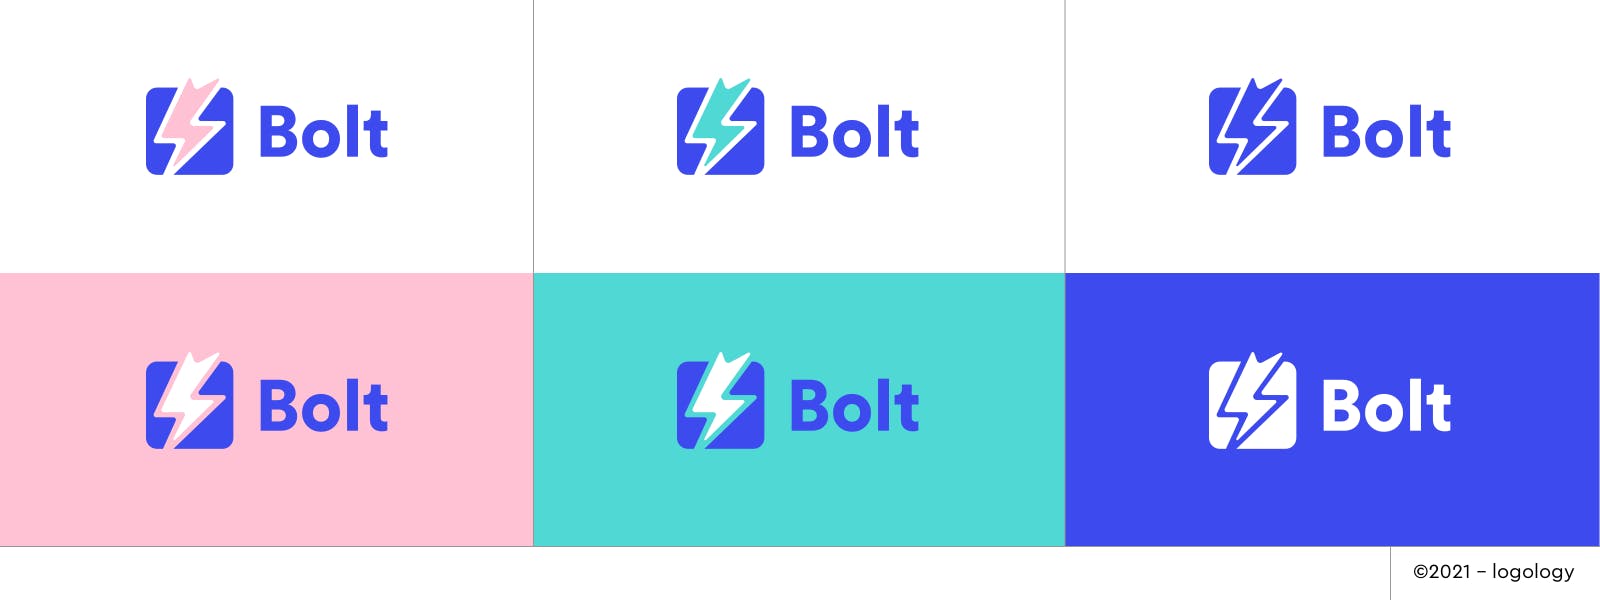 powerful lighting bolt logo variations